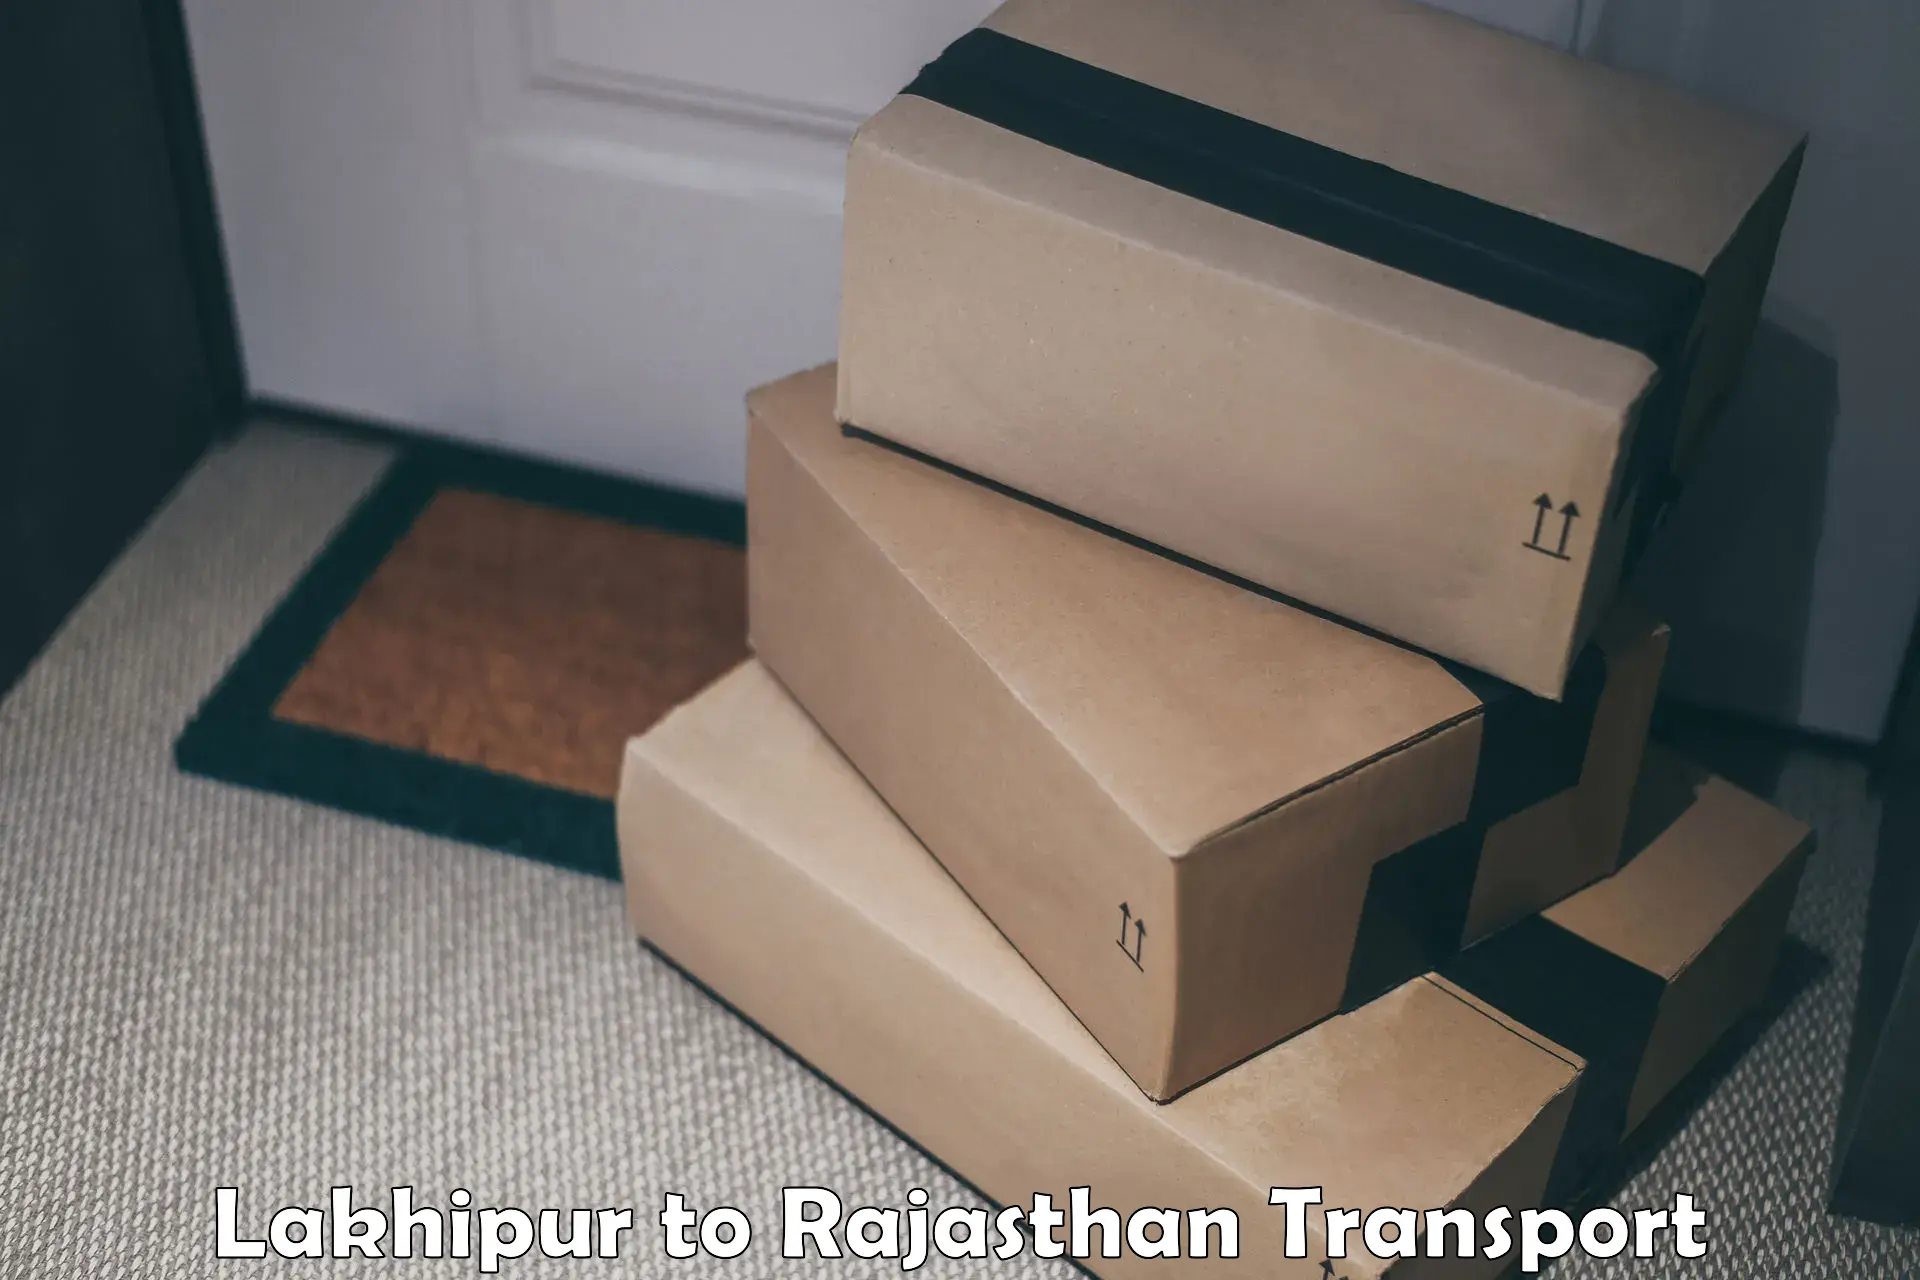 Nearby transport service Lakhipur to Pratapgarh Rajasthan